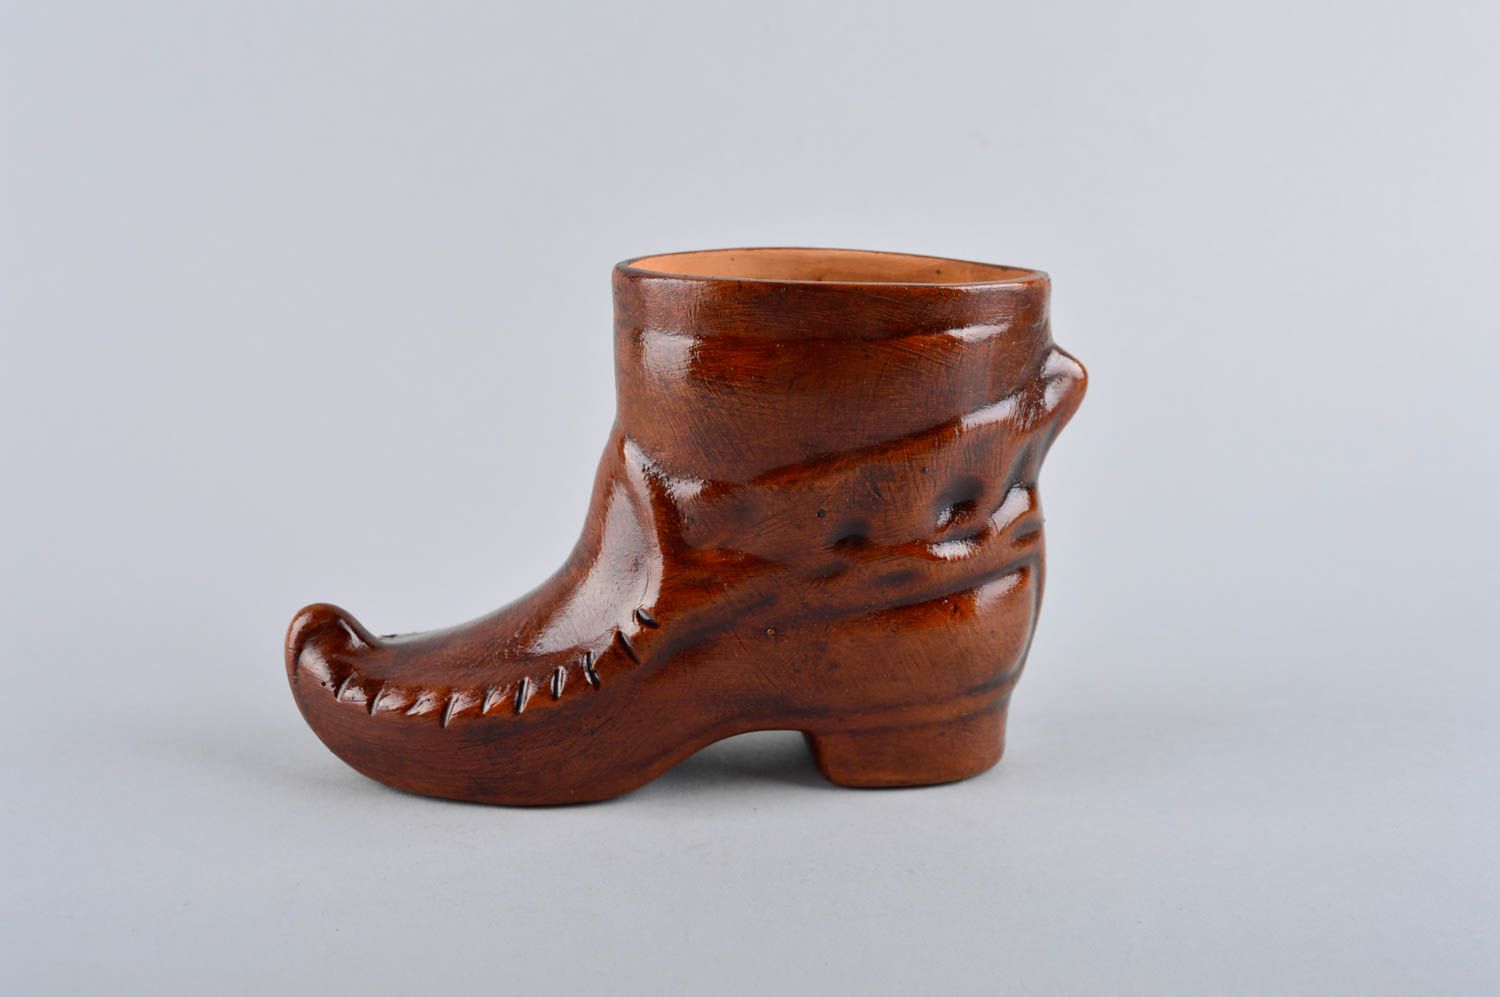 8 oz decorative boot shape ceramic brown vessel for home décor 0,5 lb photo 3